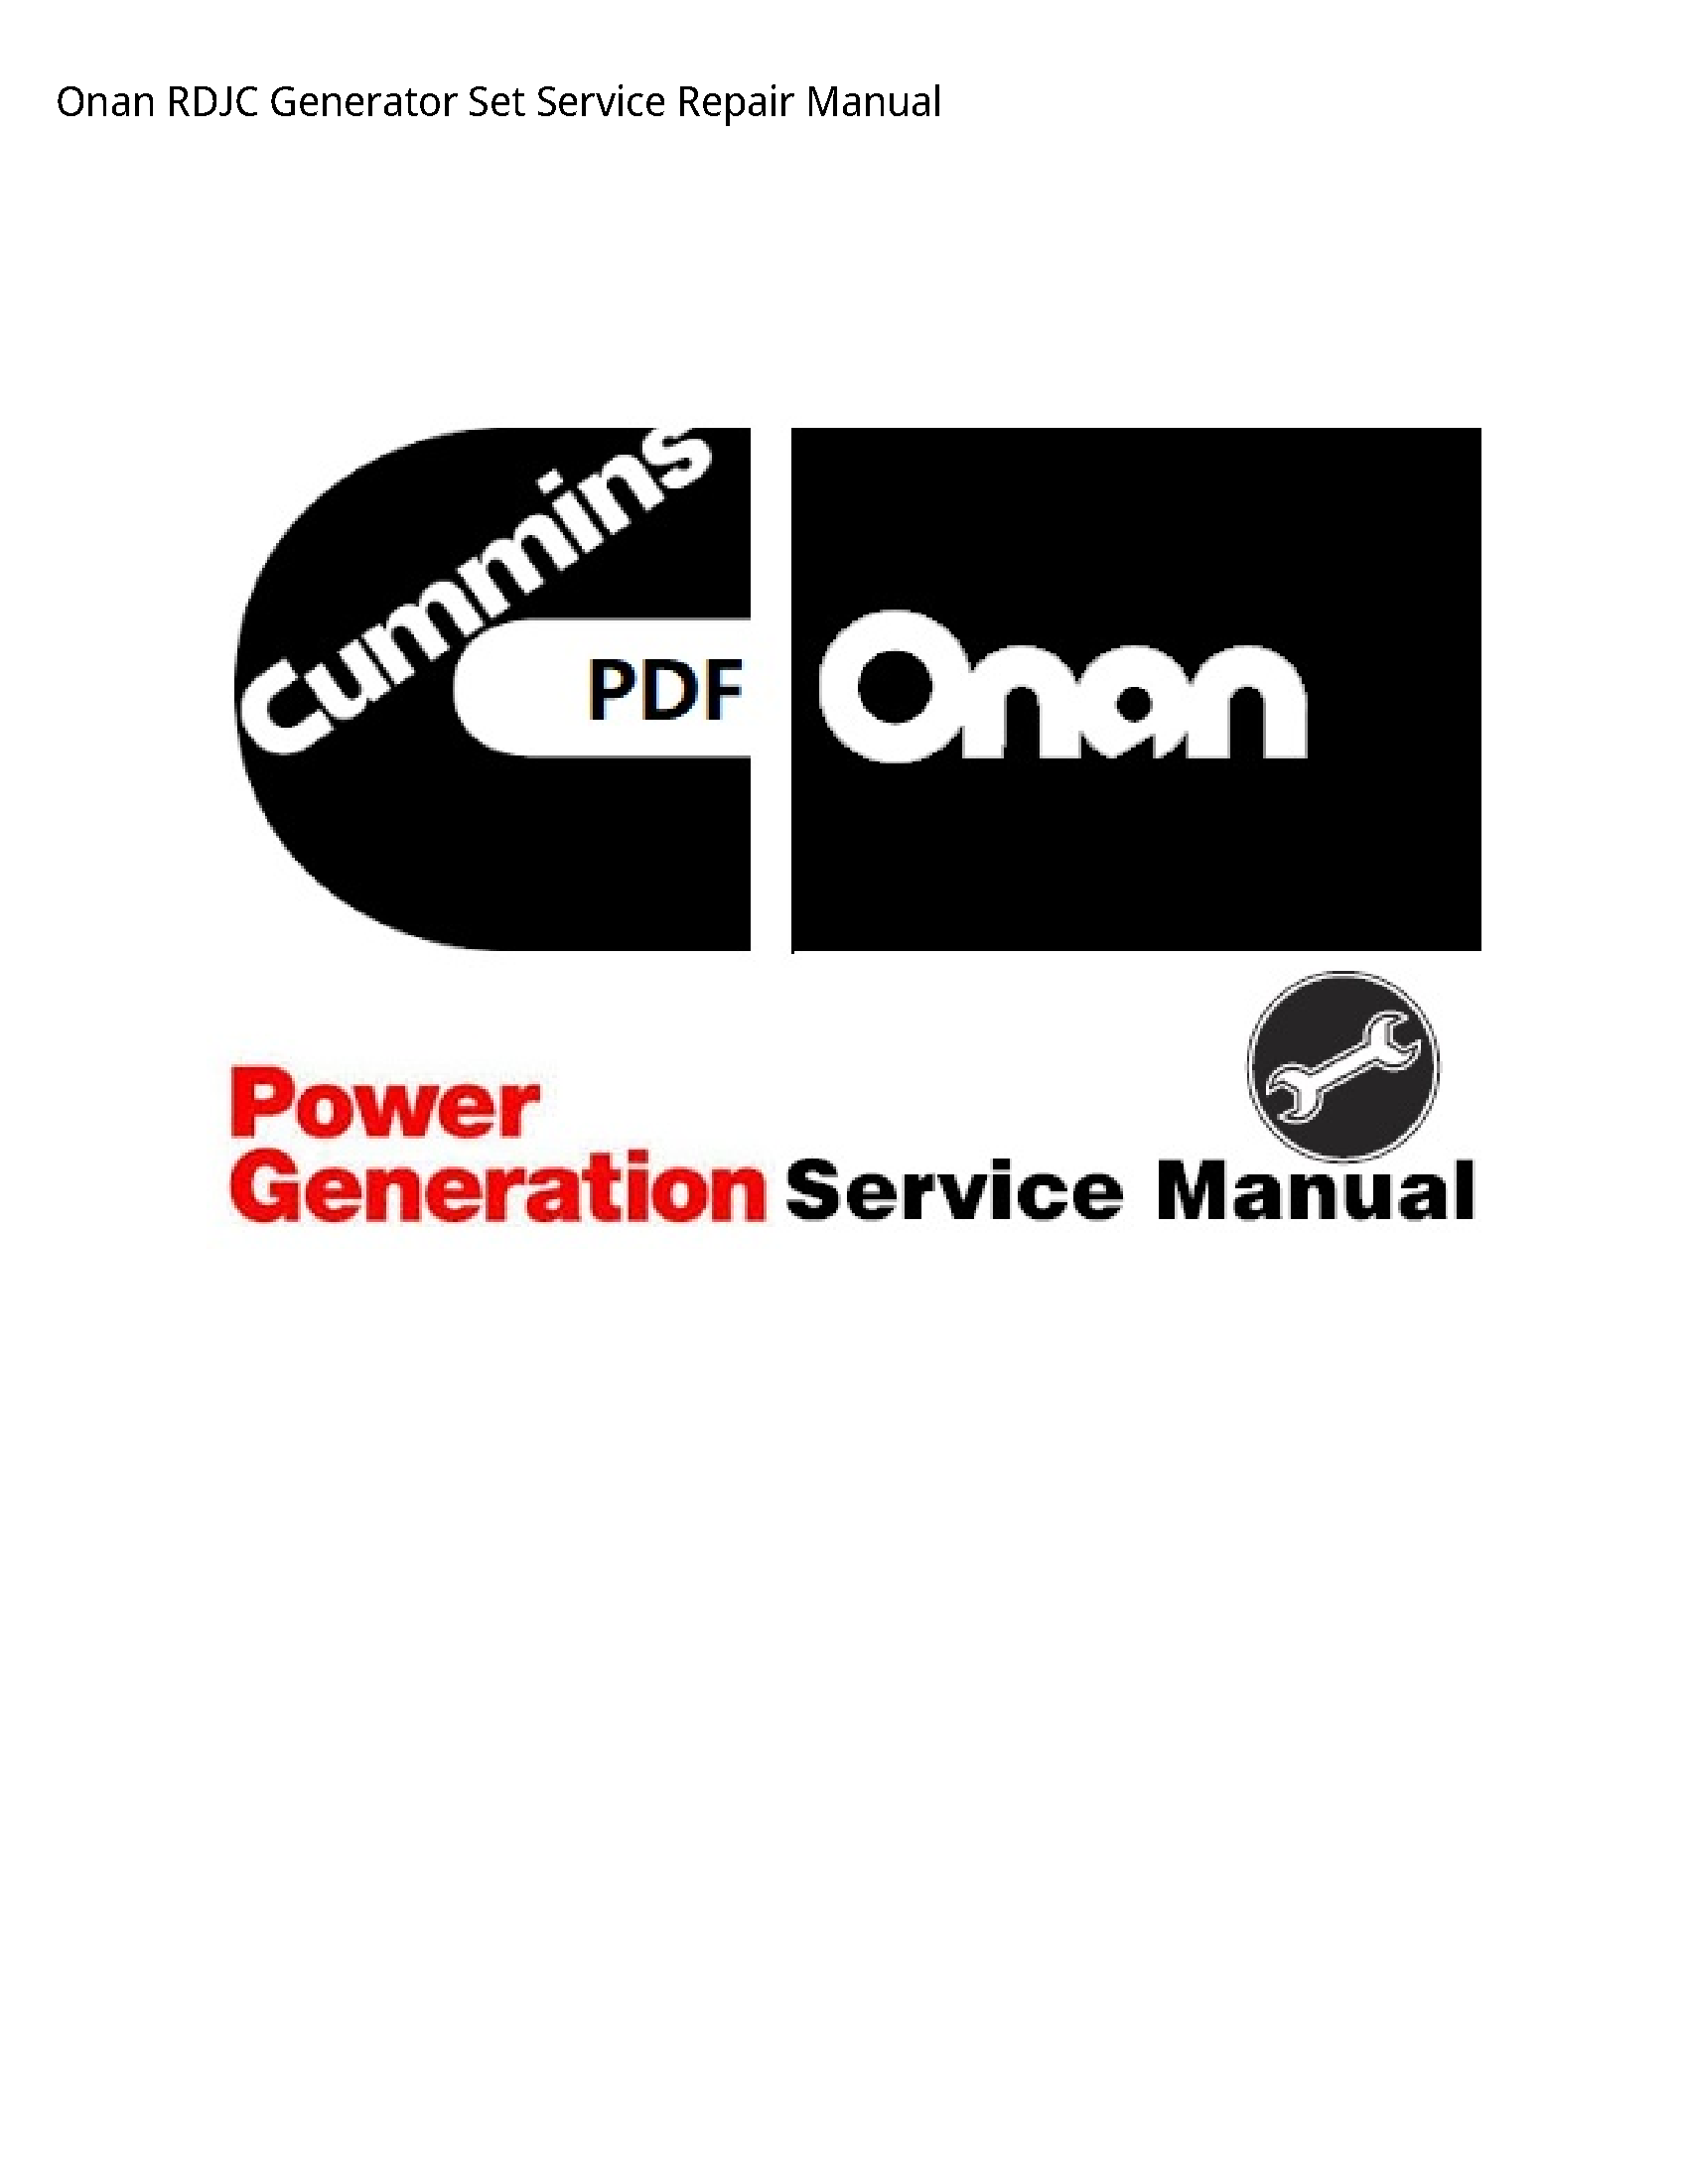 Onan RDJC Generator Set manual